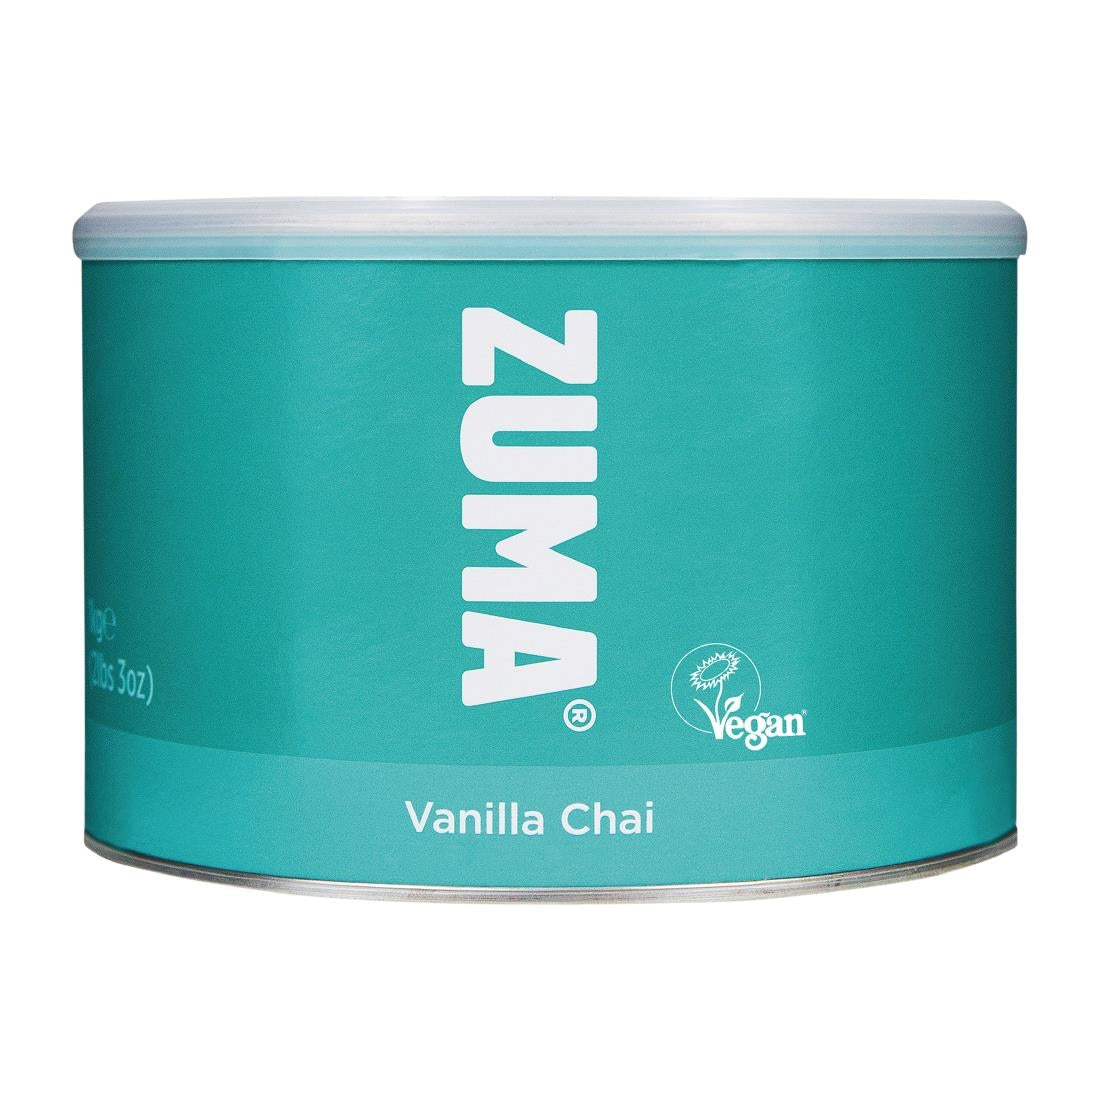 DX624 Zuma Vanilla Chai (vegan) 1kg Tin